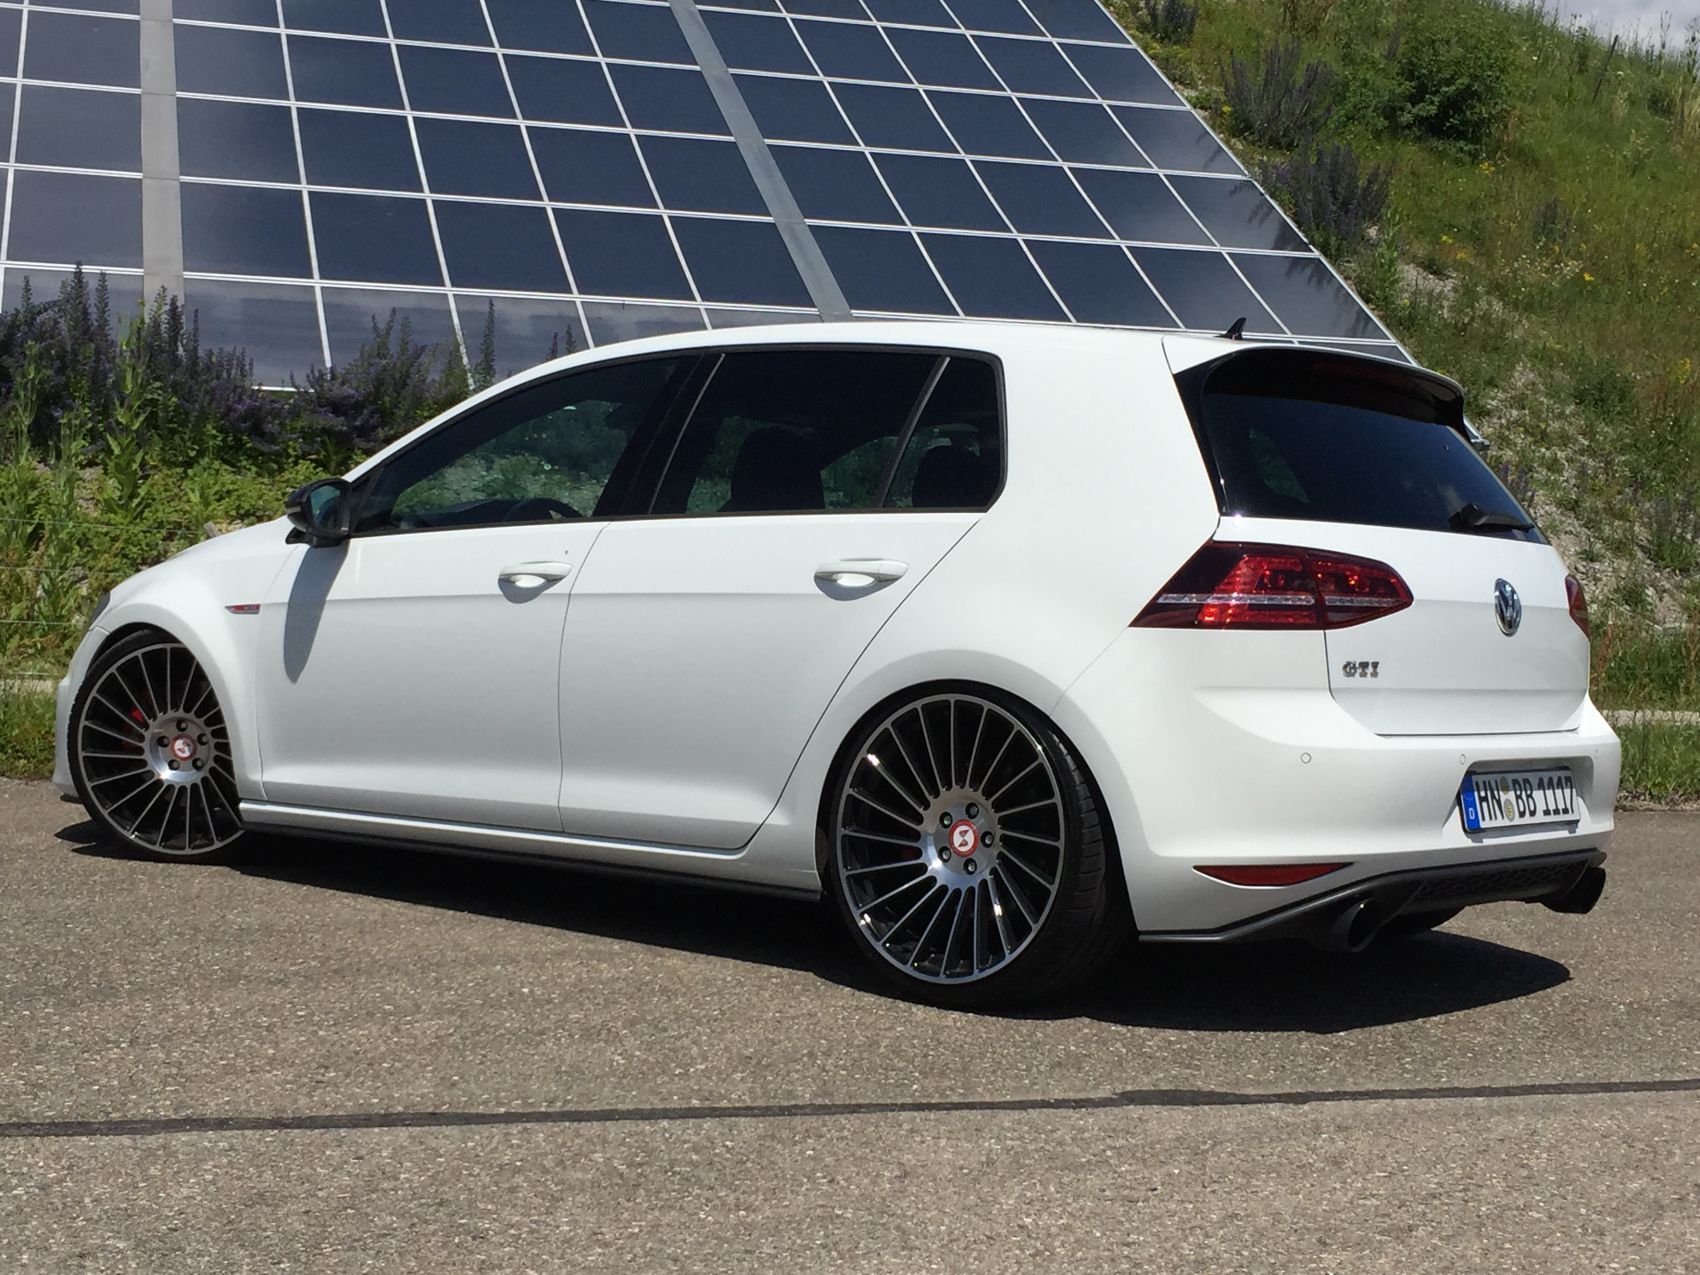 VW Golf GTI 7 Performance - Autotuning-Werkstatt in Crailsheim, Tuning